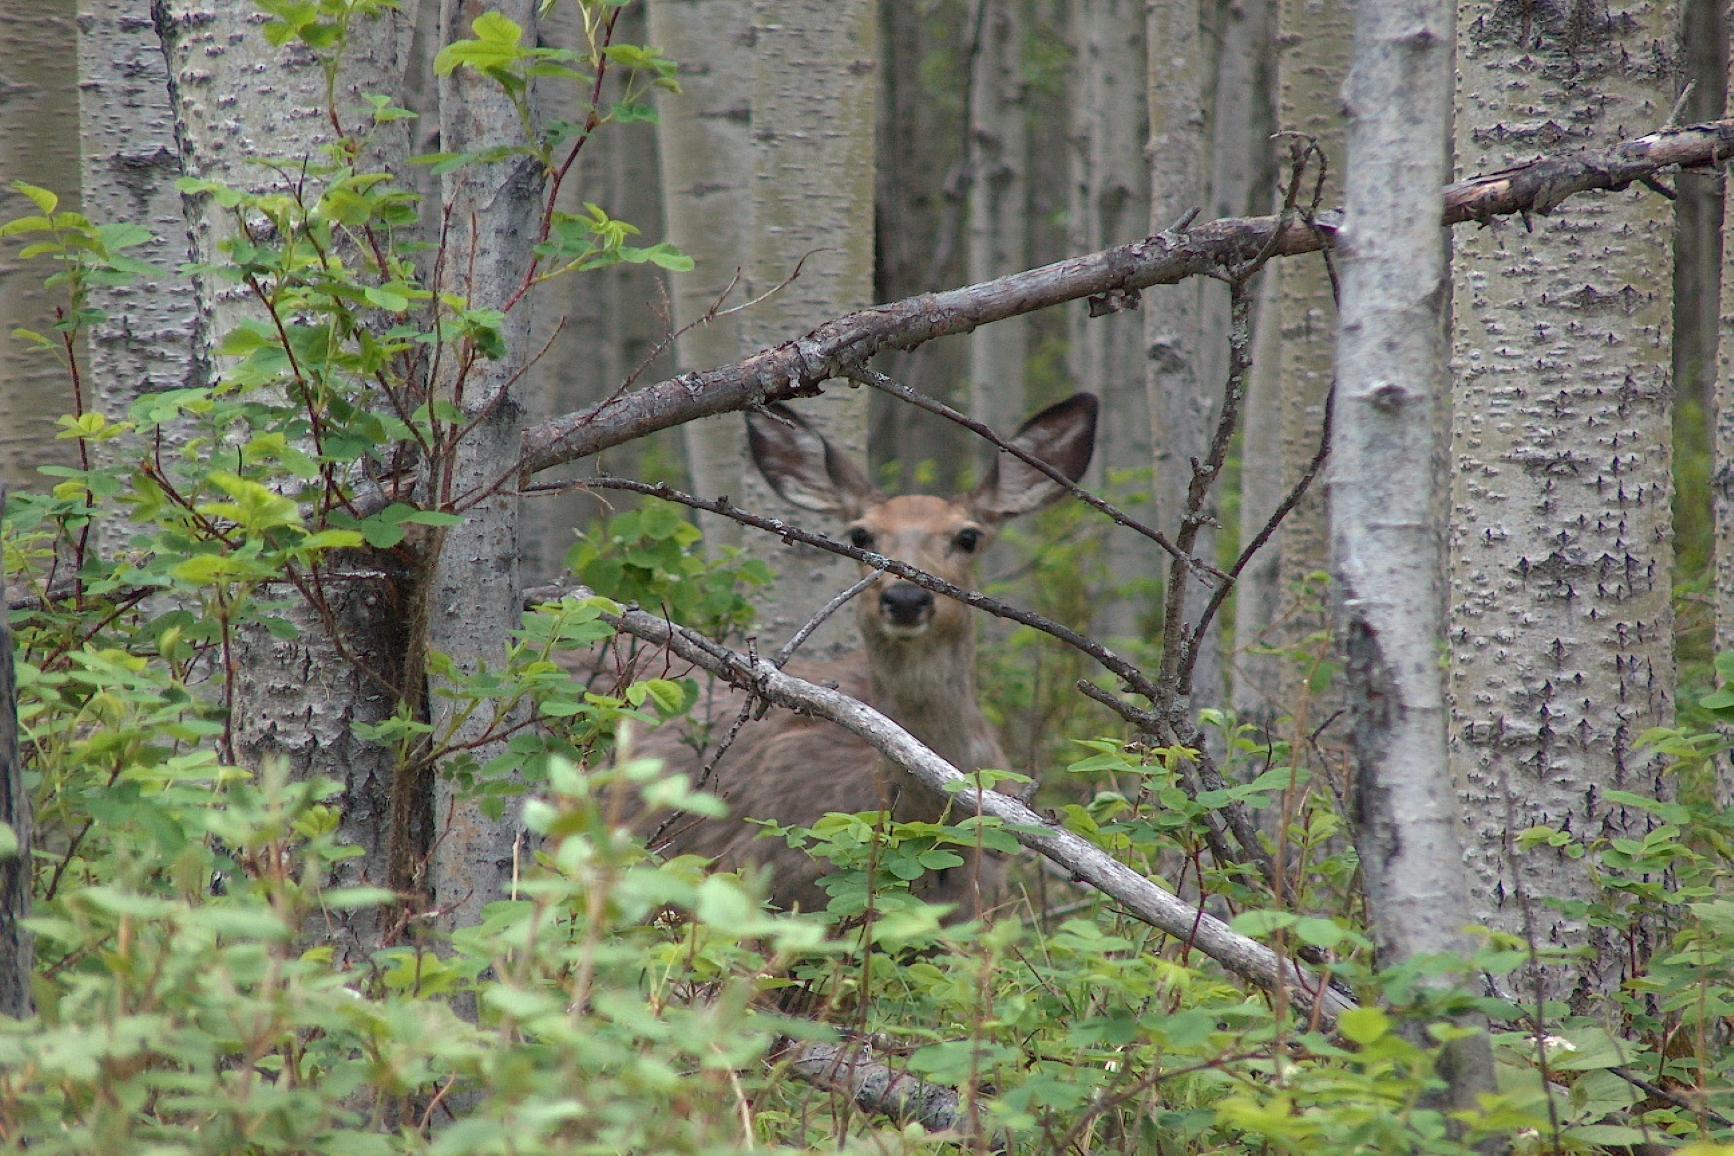 A deer peering through the trees